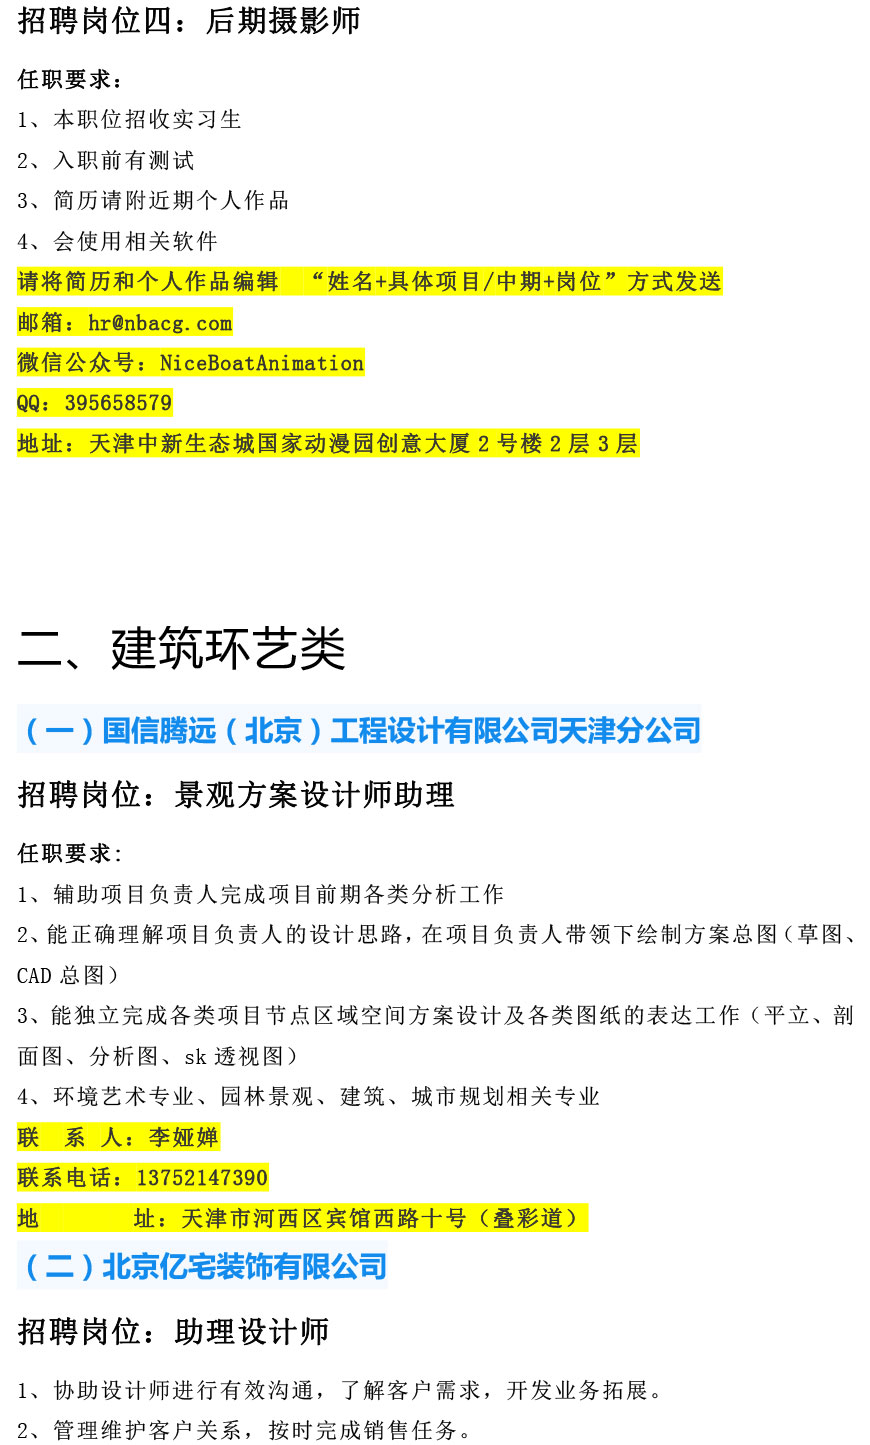 天津工艺美术职业学院2021年12月招聘信息-3.jpg